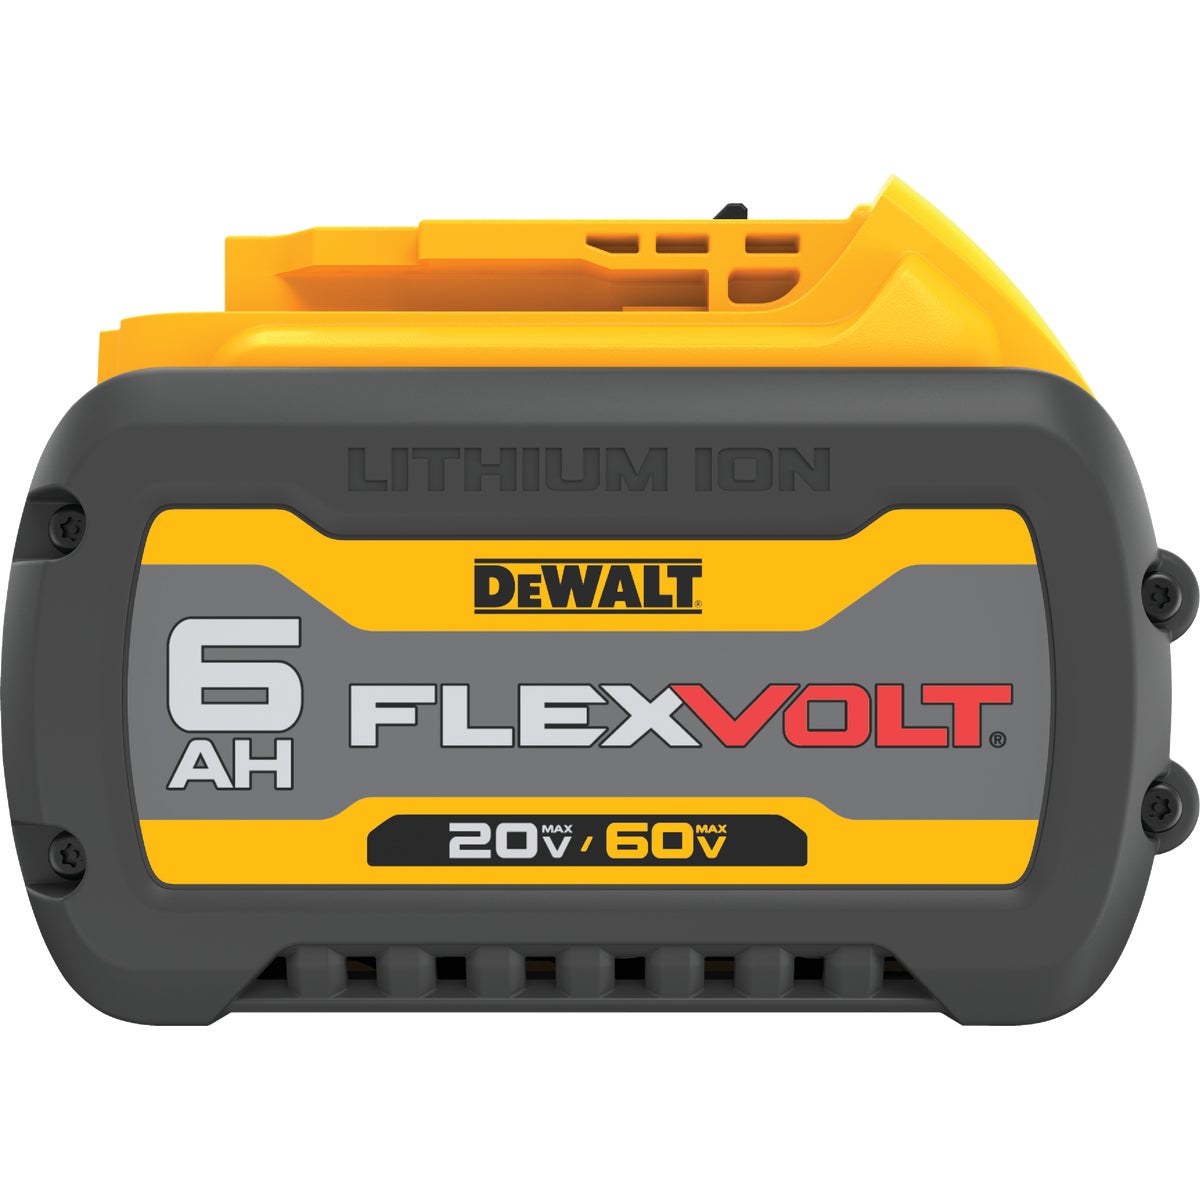 DEWALT FLEXVOLT 20 Volt and 60 Volt MAX Lithium-Ion 6.0 Ah Tool Battery